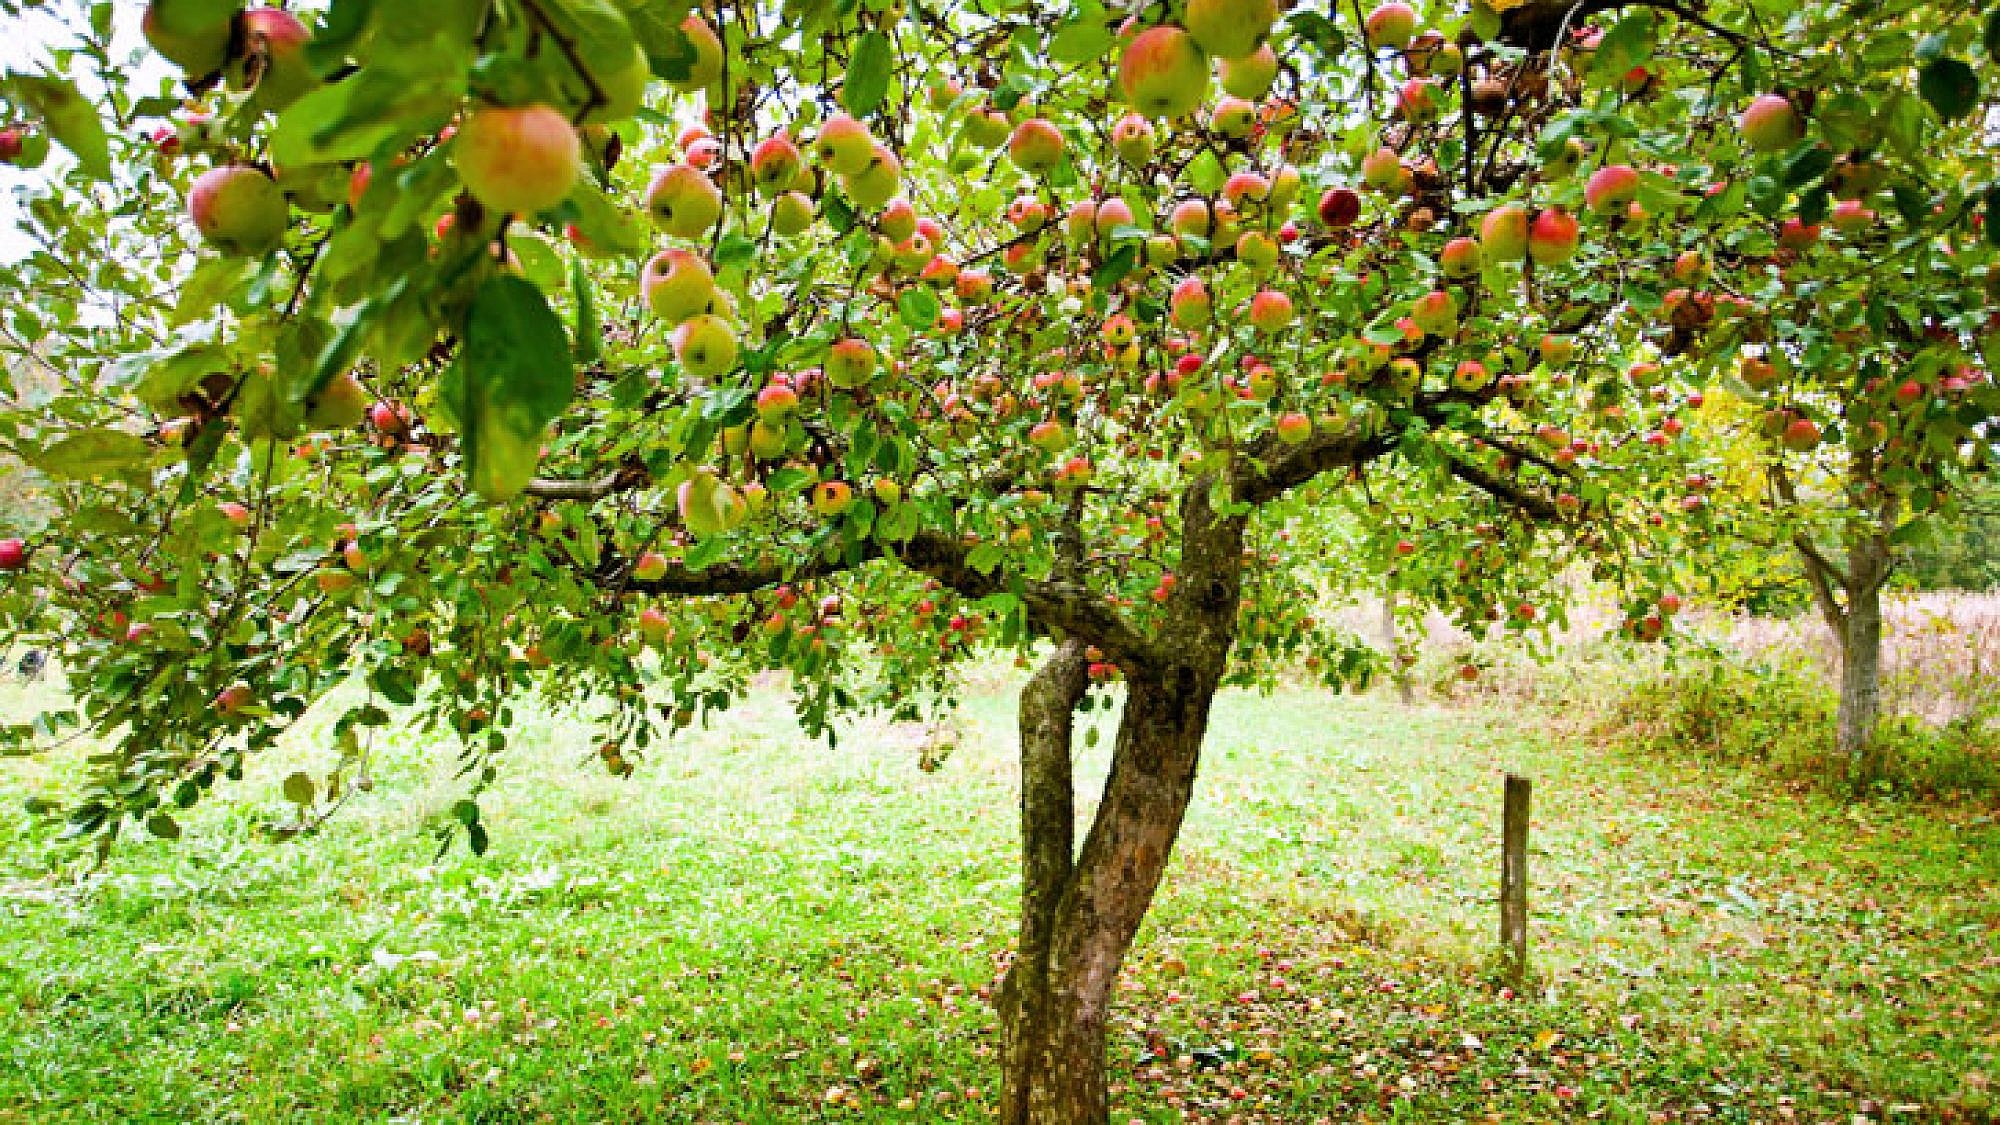 פרי תפוח העץ מטהר את הגוף בעיקר כאשר אוכלים אותו בארוחת הבוקר | צלם: א.ס.א.פ קריאייטיב | Catalin Petolea, shutterstock